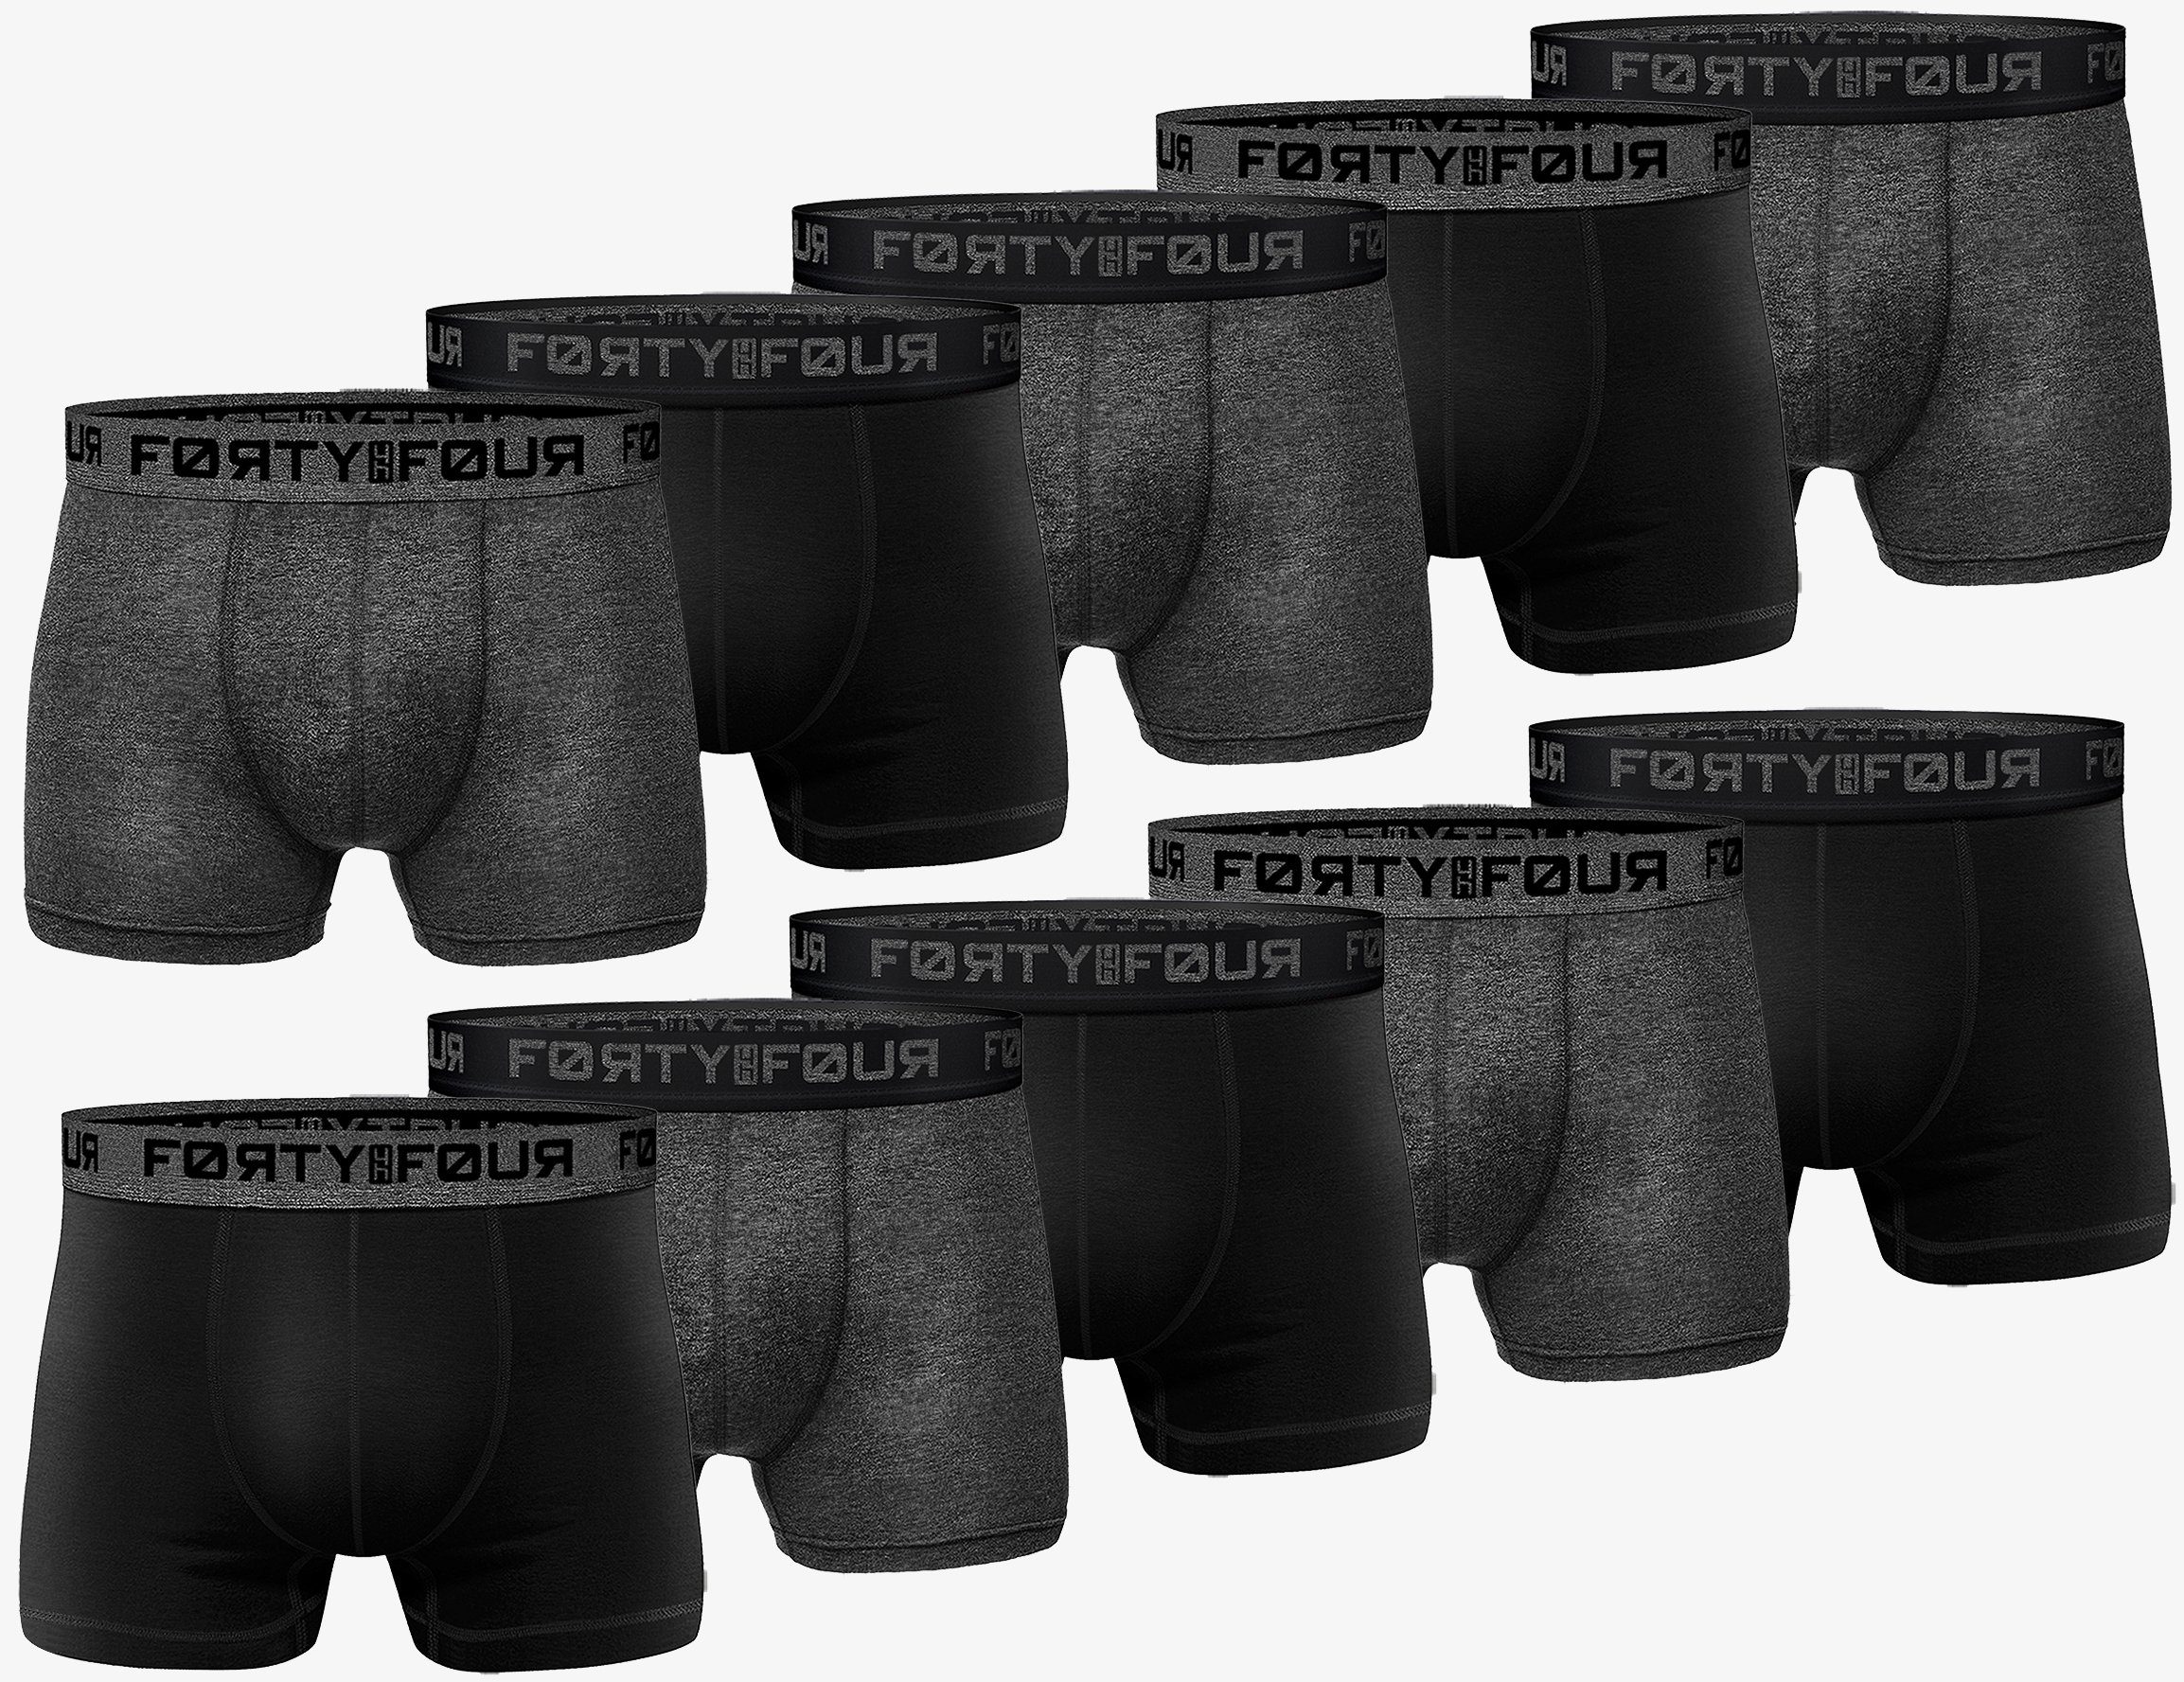 Herren - Pack) 7XL 710e-schwarz/anthrazit 10er FortyFour Pack, Boxershorts Passform S Männer Baumwolle (Spar Unterhosen Qualität Premium perfekte